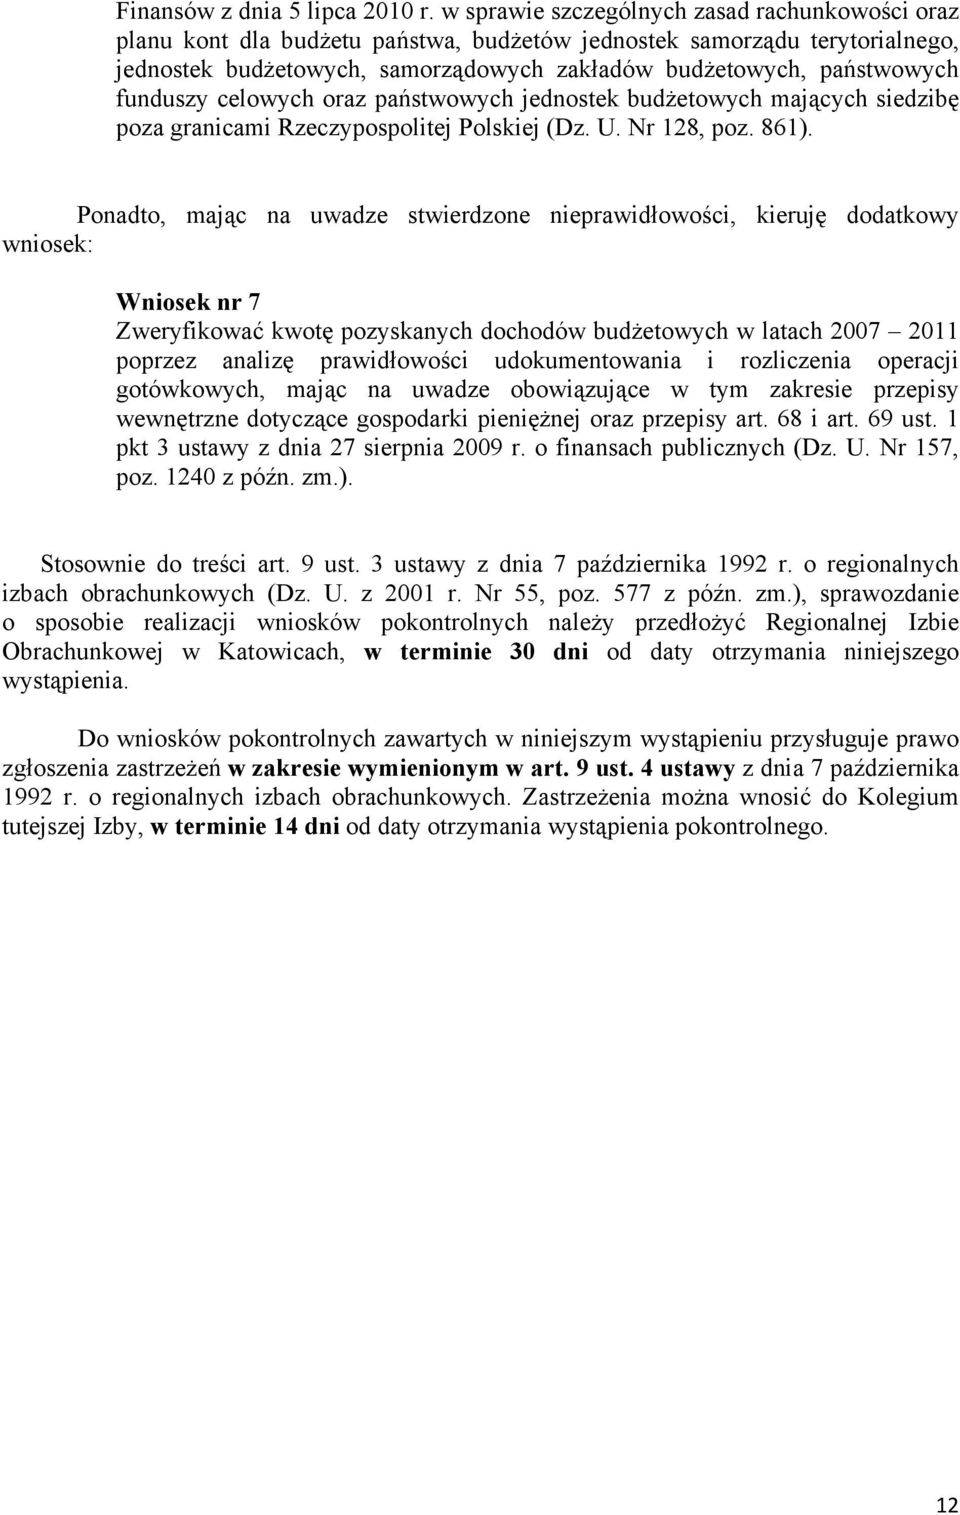 funduszy celowych oraz państwowych jednostek budŝetowych mających siedzibę poza granicami Rzeczypospolitej Polskiej (Dz. U. Nr 128, poz. 861).